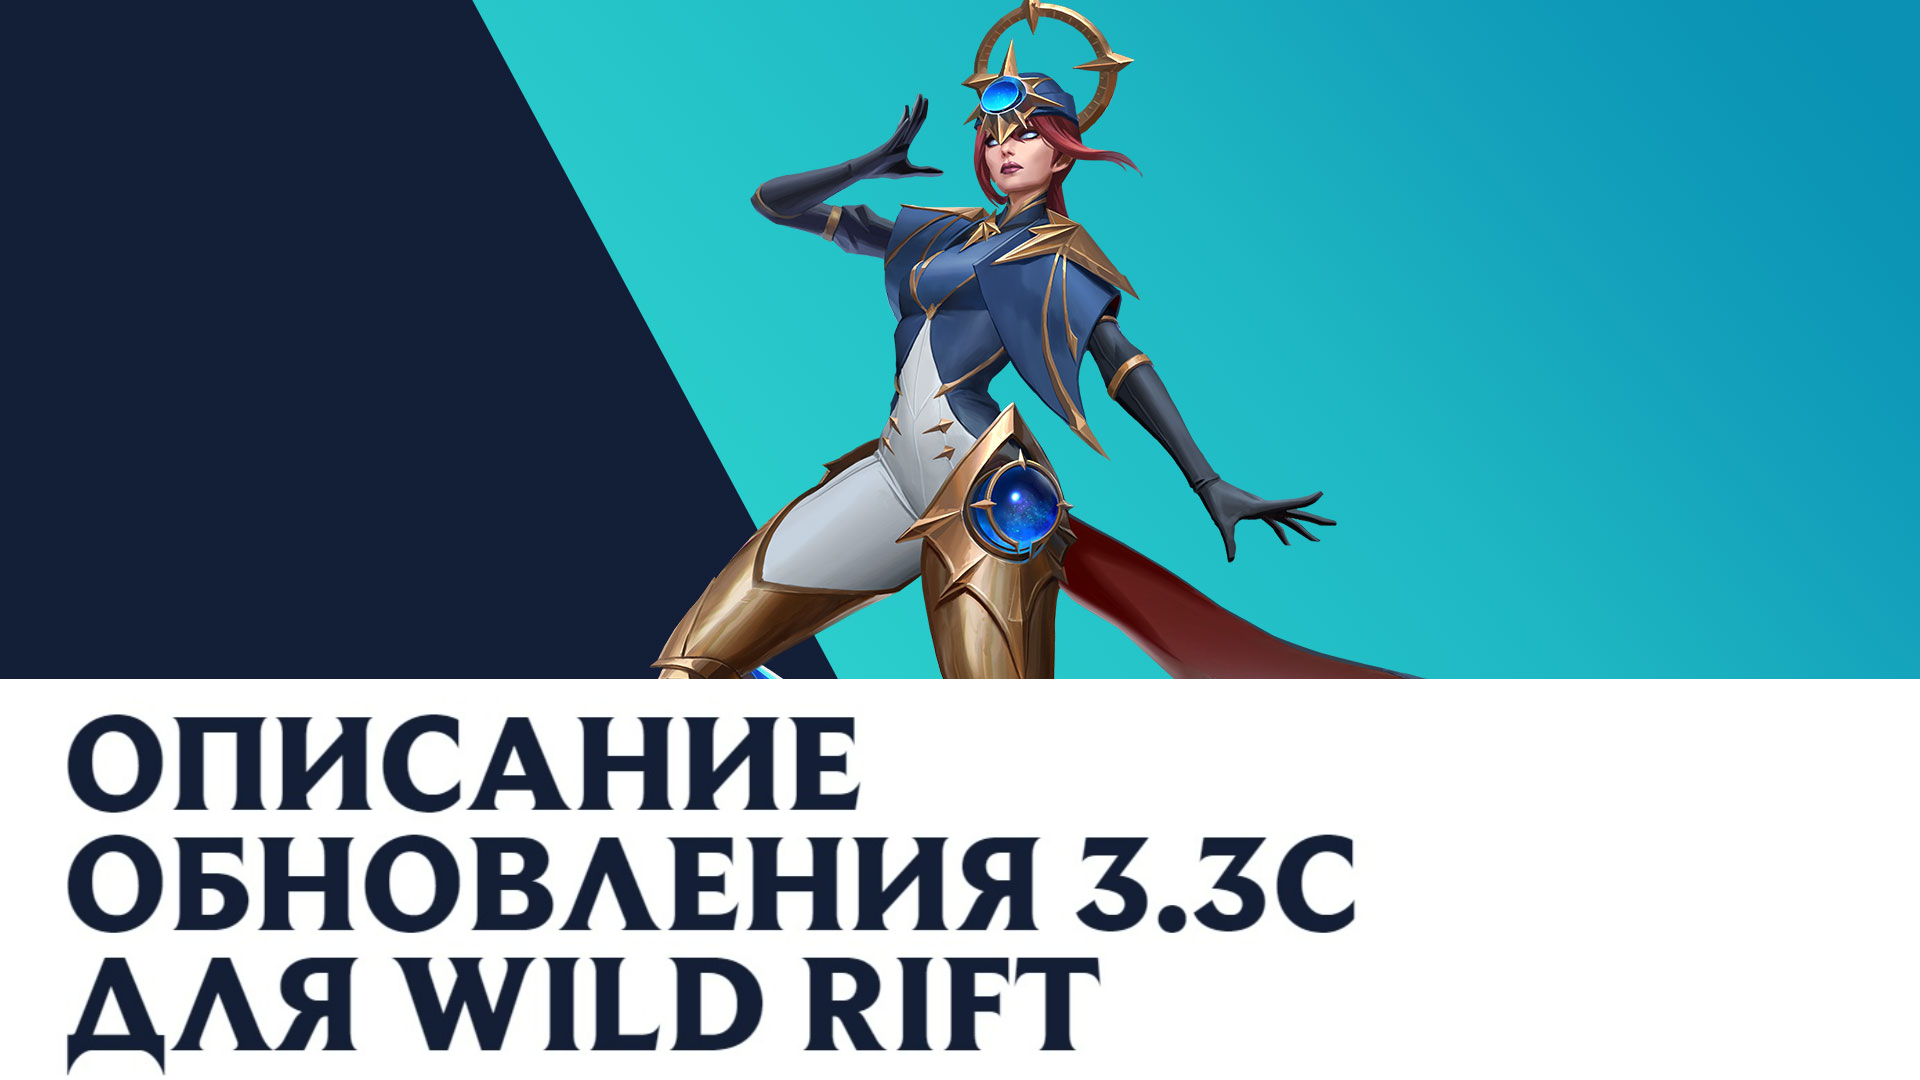 Вышел балансный патч 3.3с для League of Legends: Wild Rift